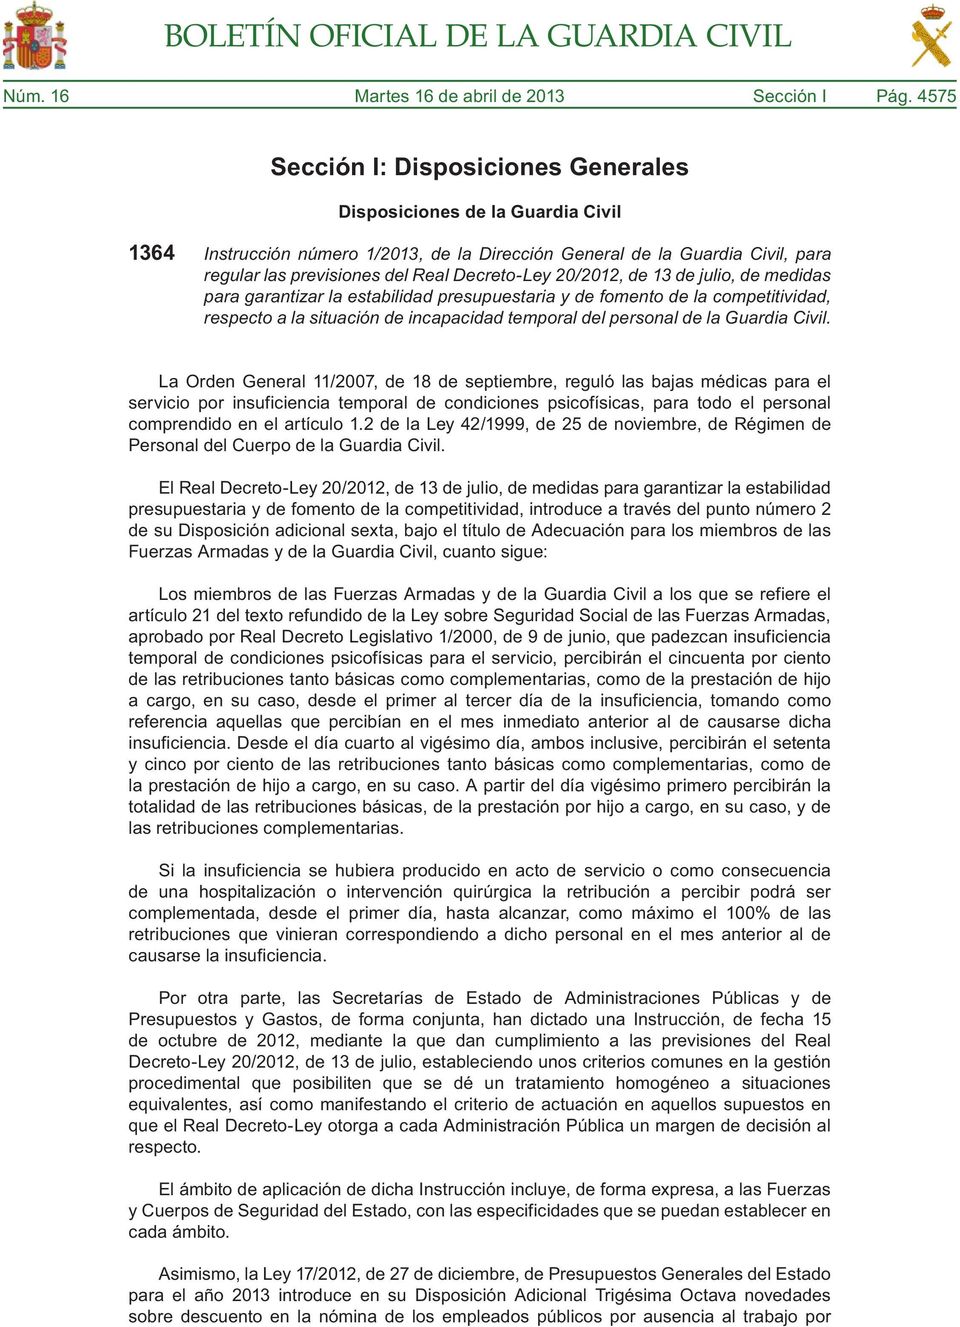 Decreto-Ley 20/2012, de 13 de julio, de medidas para garantizar la estabilidad presupuestaria y de fomento de la competitividad, respecto a la situación de incapacidad temporal del personal de la